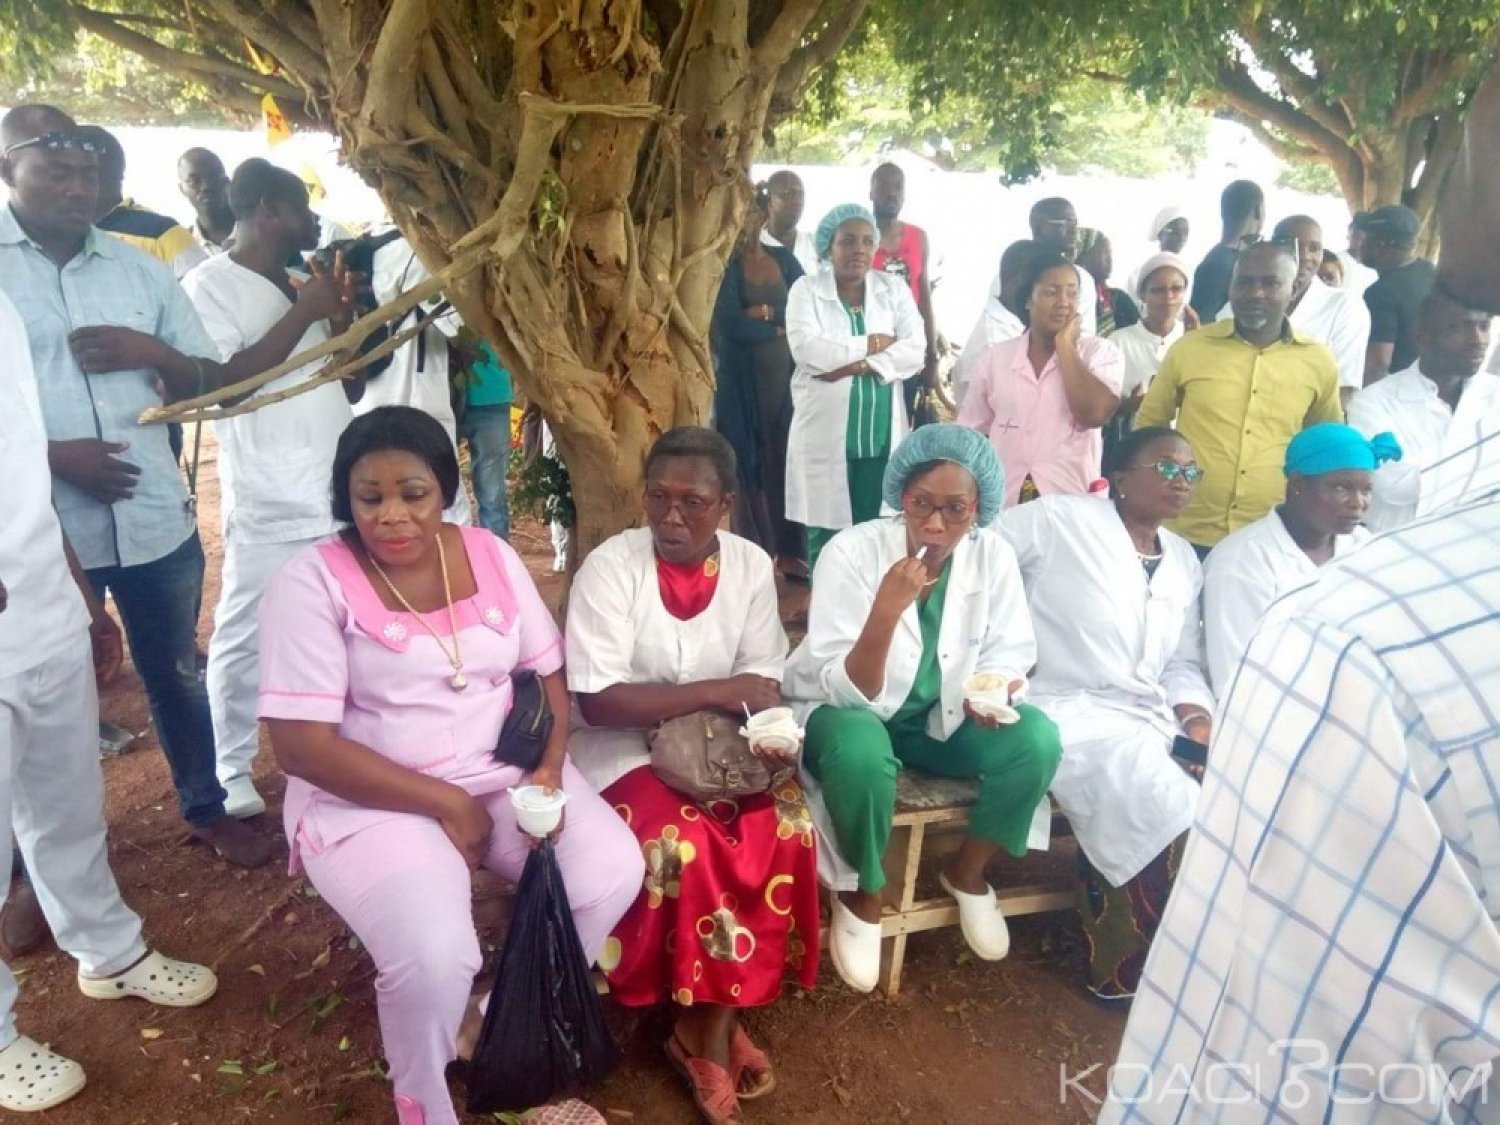 Côte d'Ivoire : Daloa, la Plateforme Santé bloque les activités dans les hôpitaux publics ainsi qu'au CHR pour exiger la libération d'un infirmier